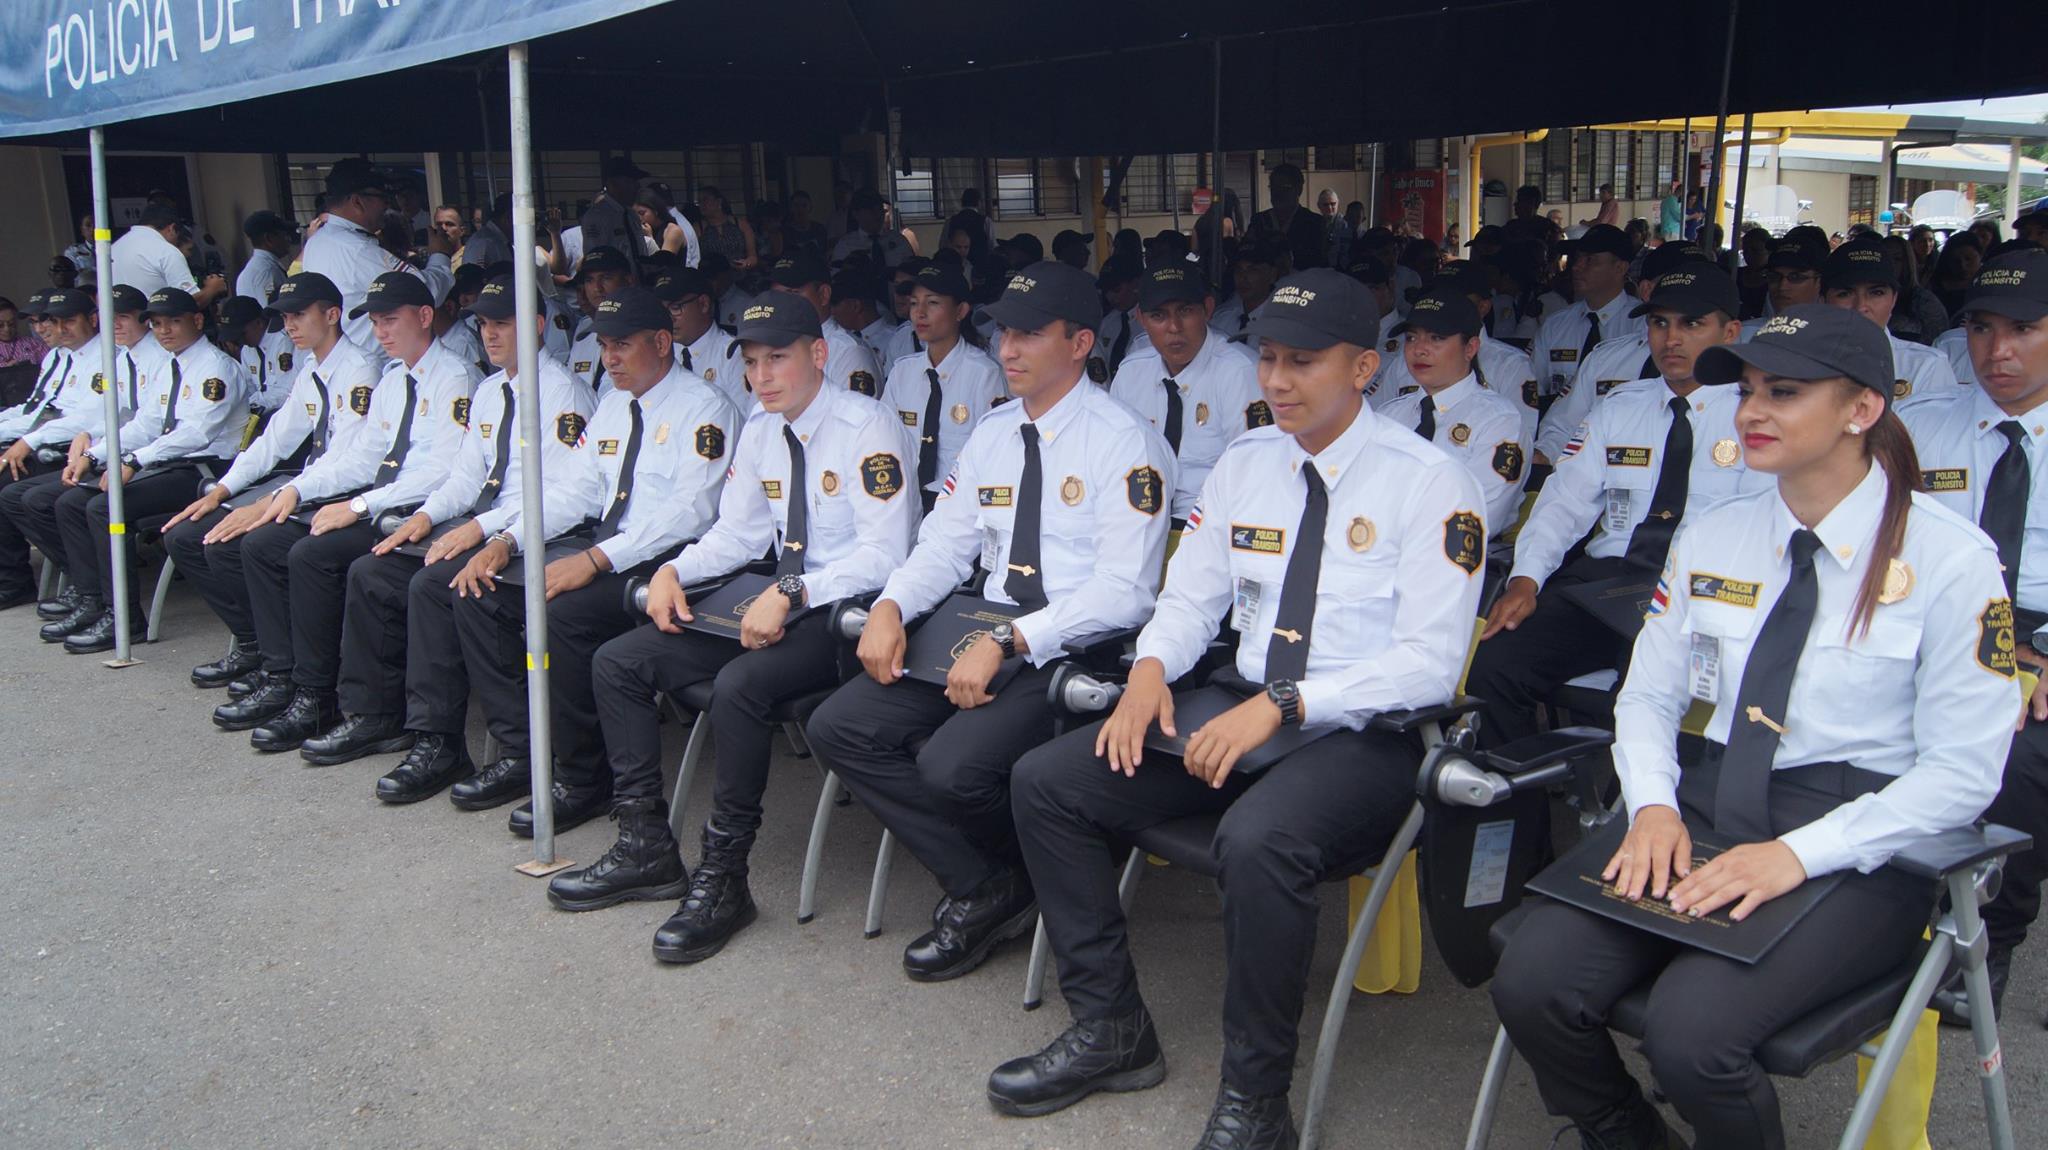 Policía de tránsito sumará 23 nuevos oficiales para controlar puntos más congestionados de la capital